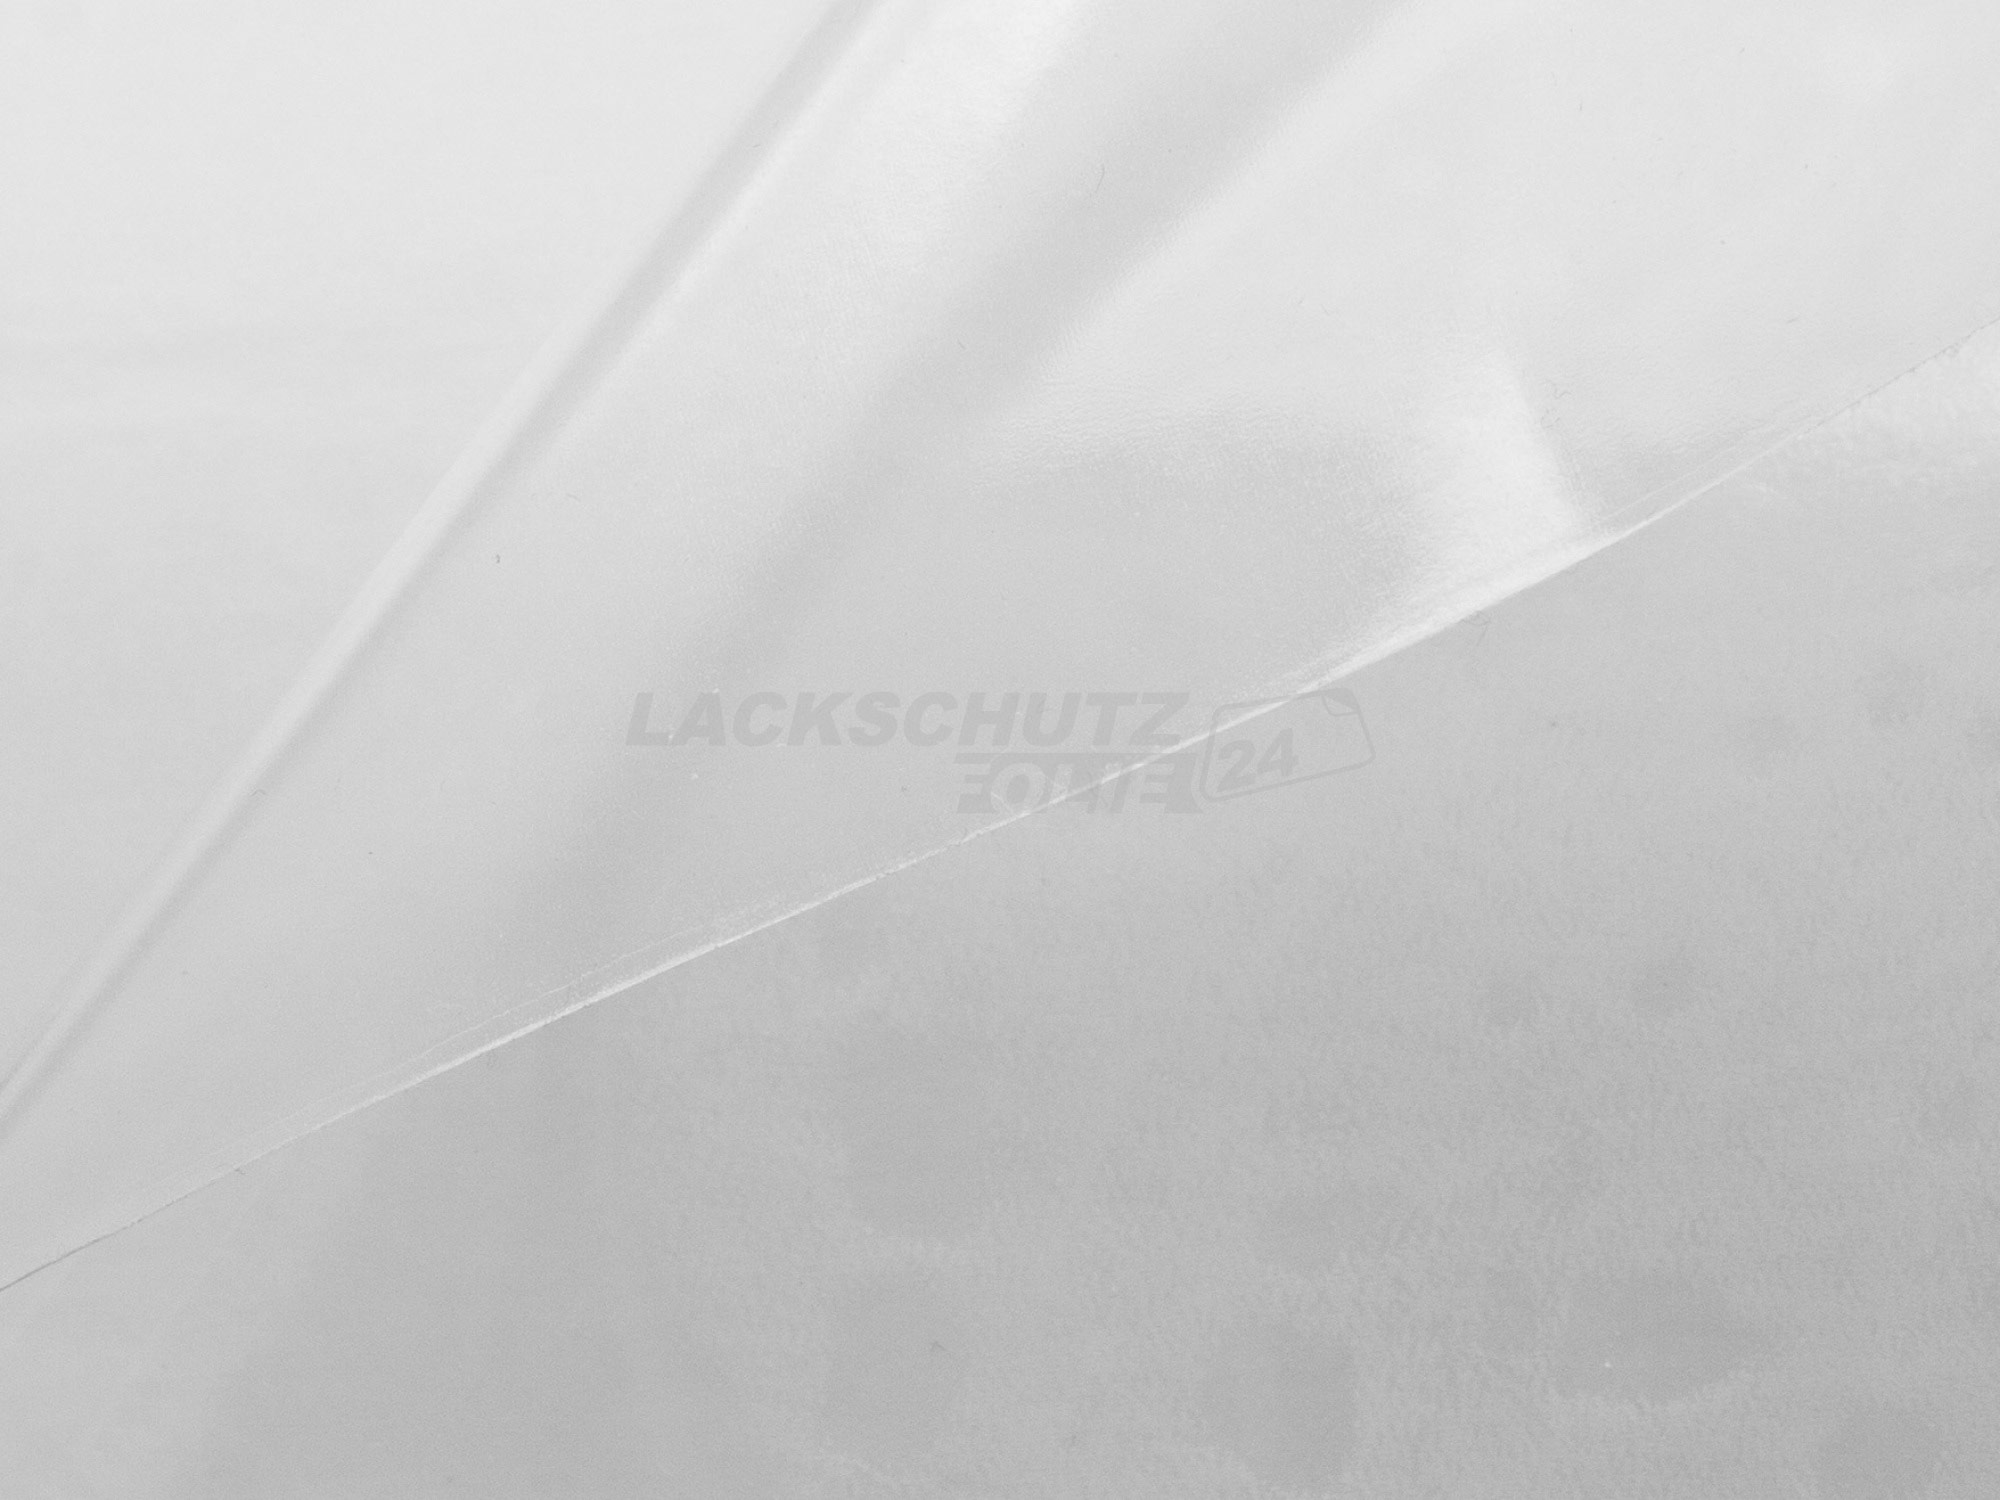 Ladekantenschutzfolie - Transparent Glatt Hochglänzend 150 µm stark für VW / Volkswagen Tiguan (I) Typ 5N, BJ 08/2007-01/2016